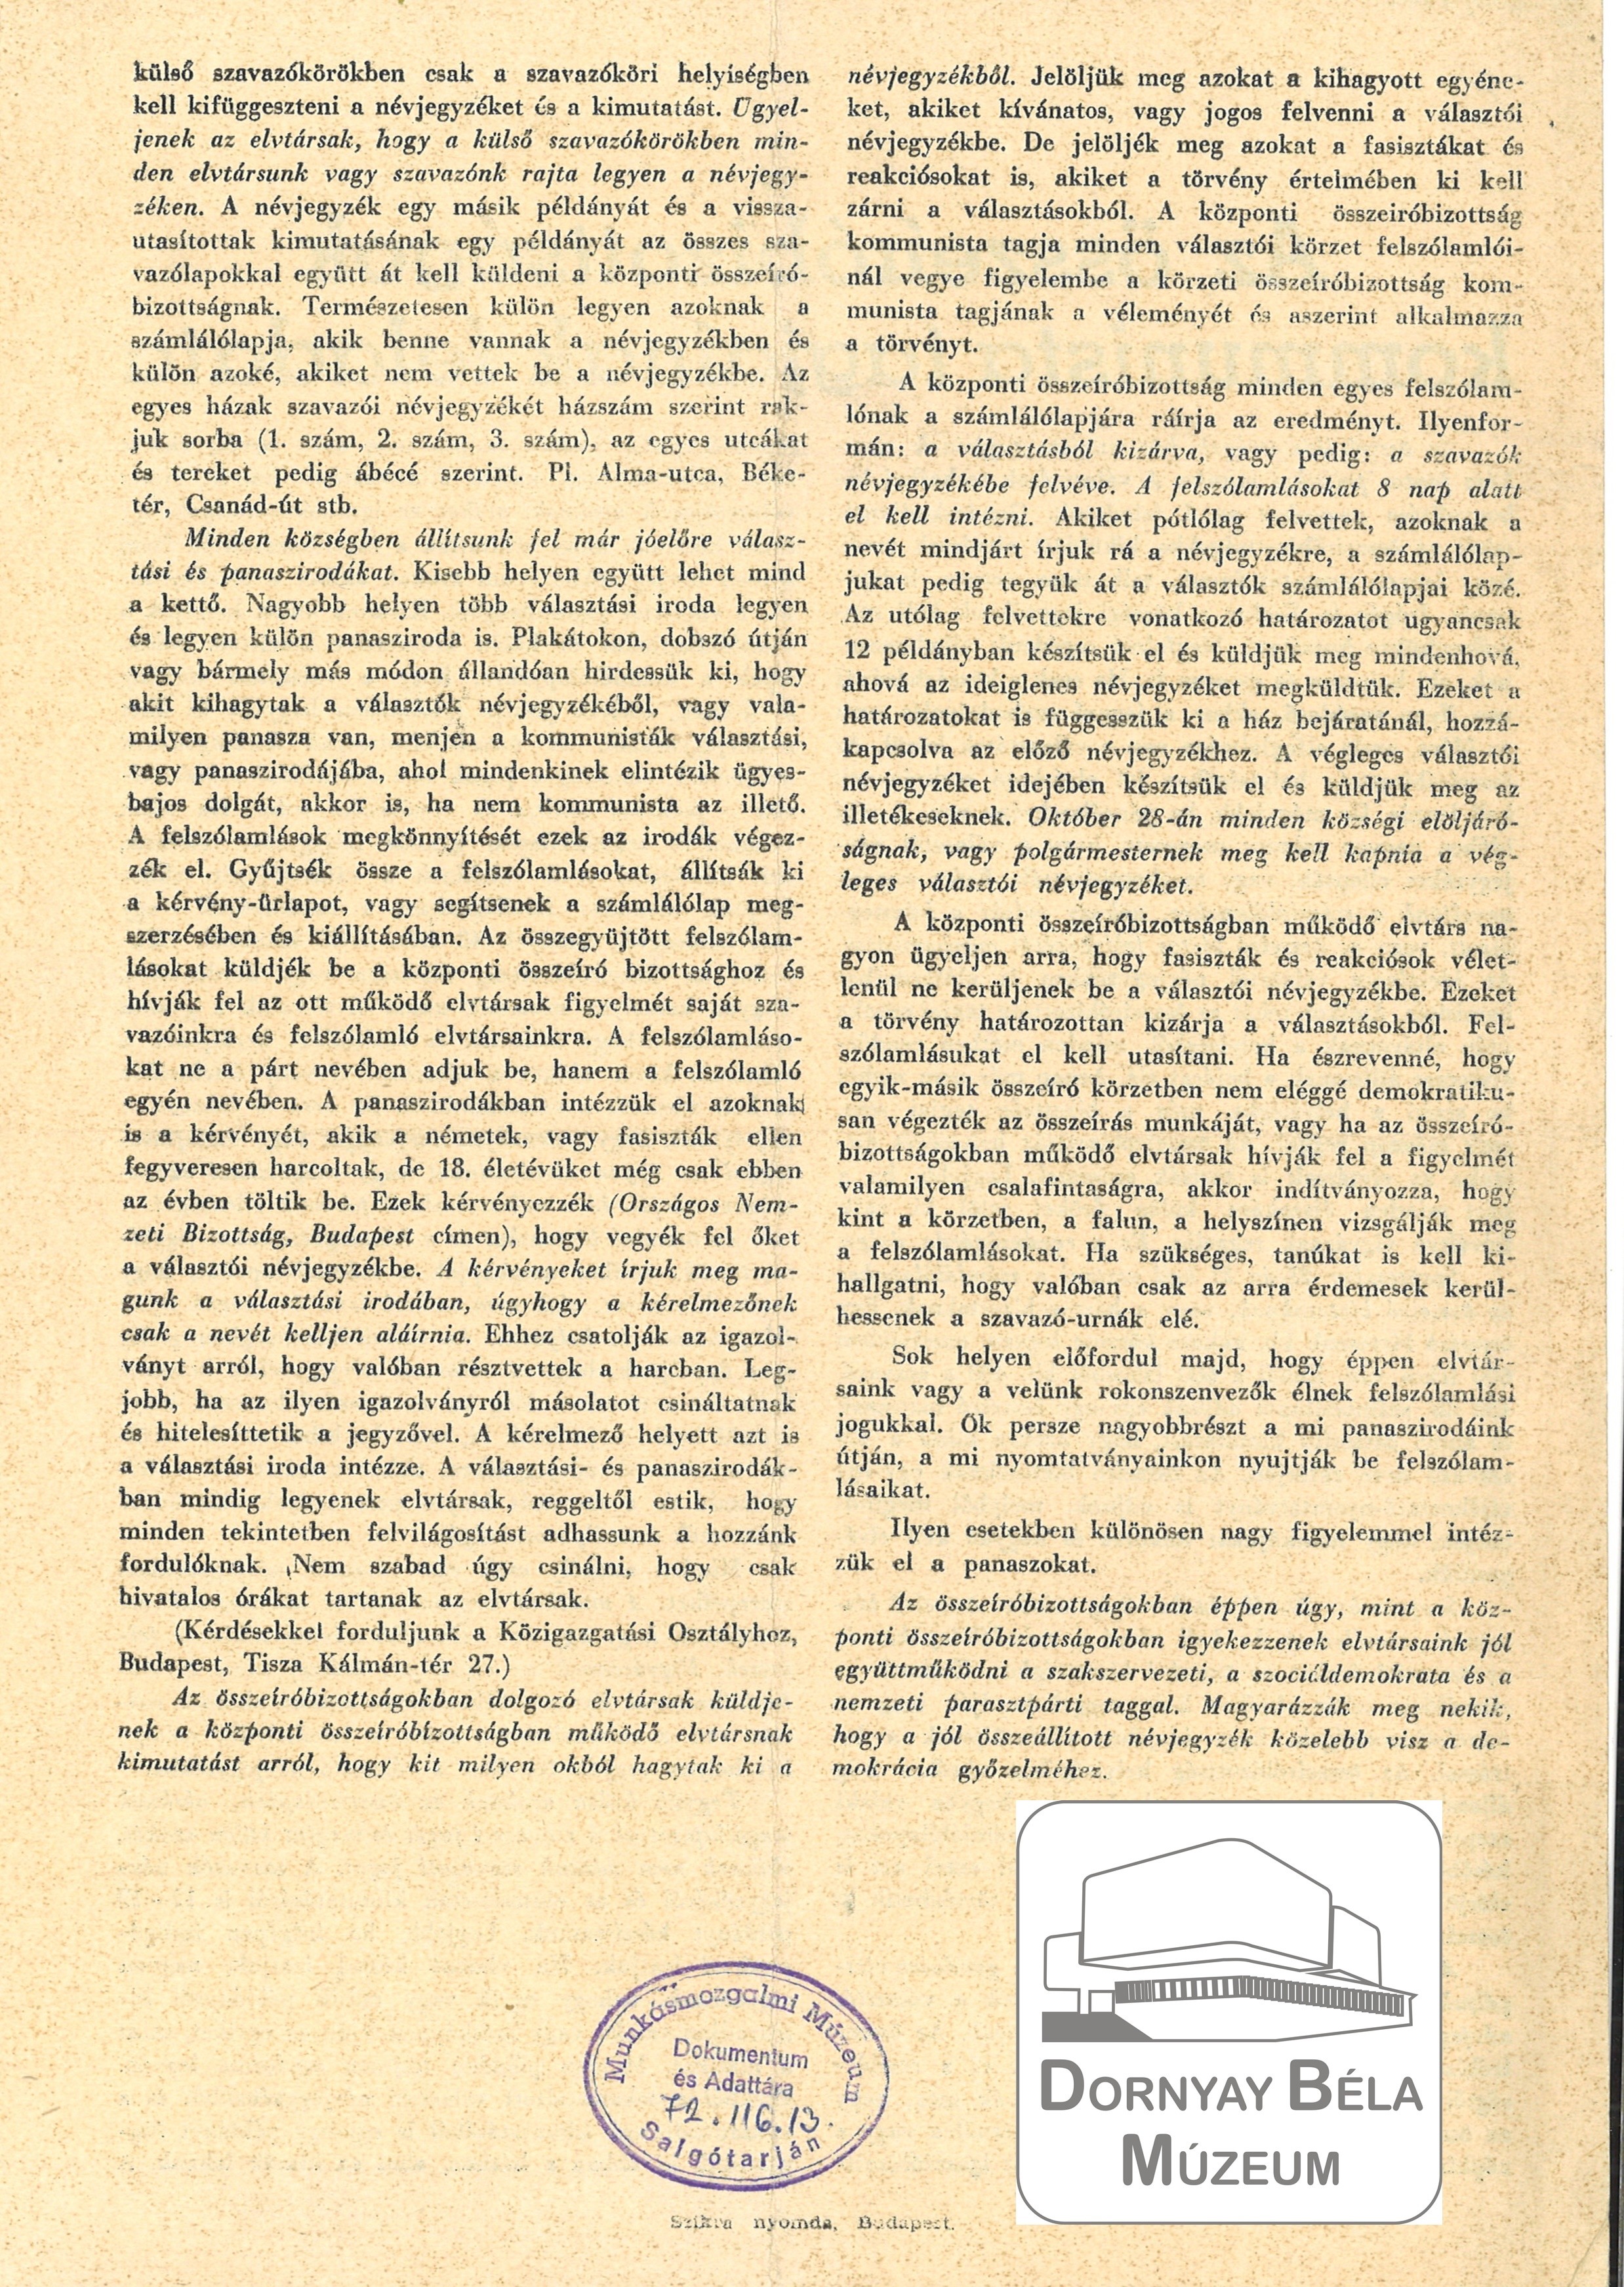 MKP választási röplapja. Felhívás a hadifoglyokhoz. (Dornyay Béla Múzeum, Salgótarján CC BY-NC-SA)